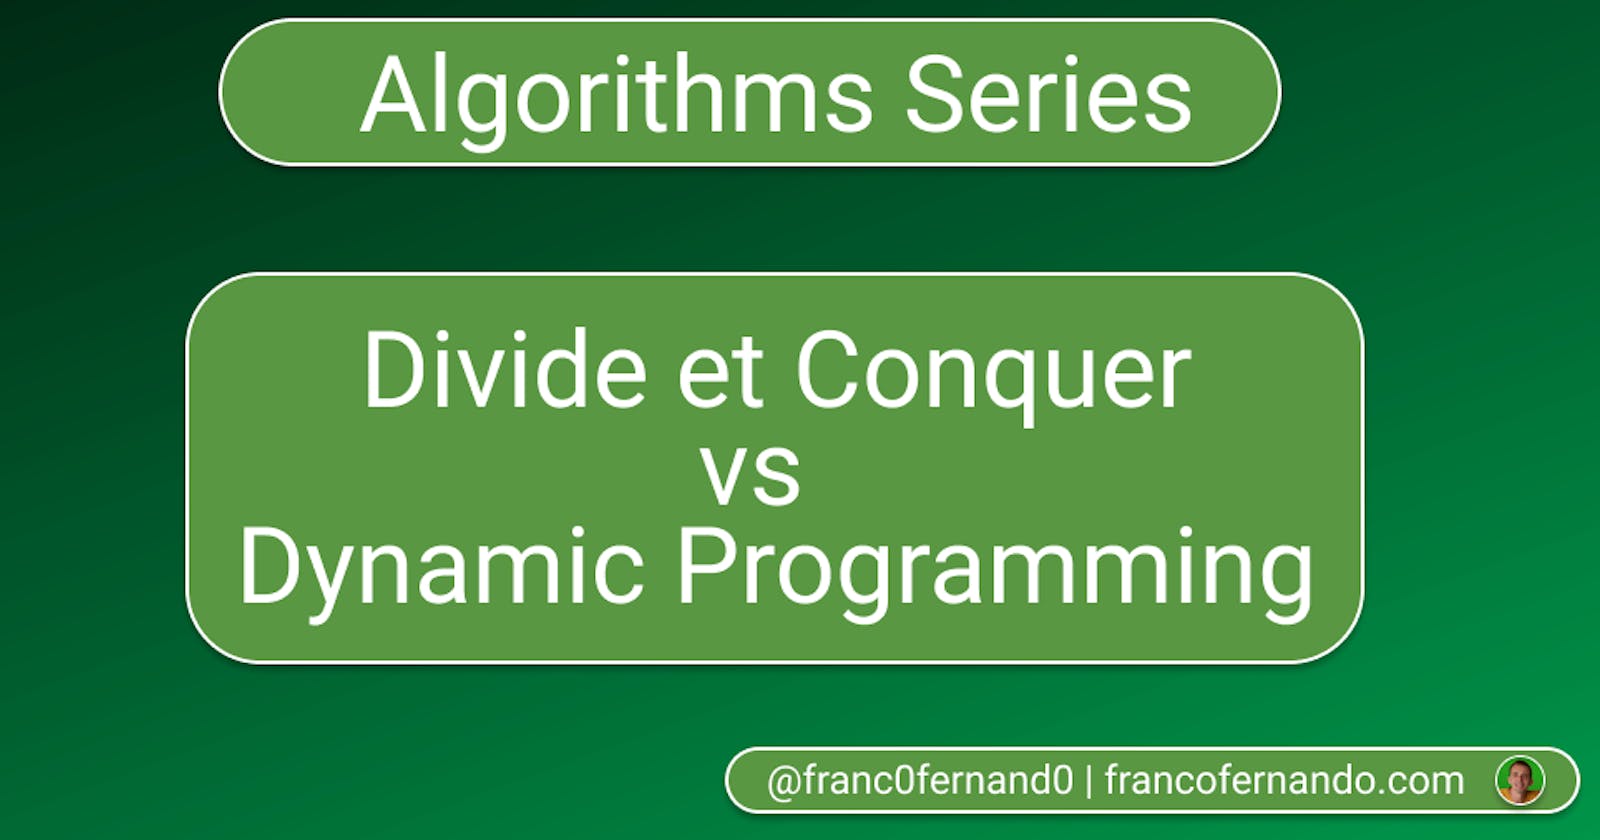 Algorithms explained: Divide et Conquer vs Dynamic Programming